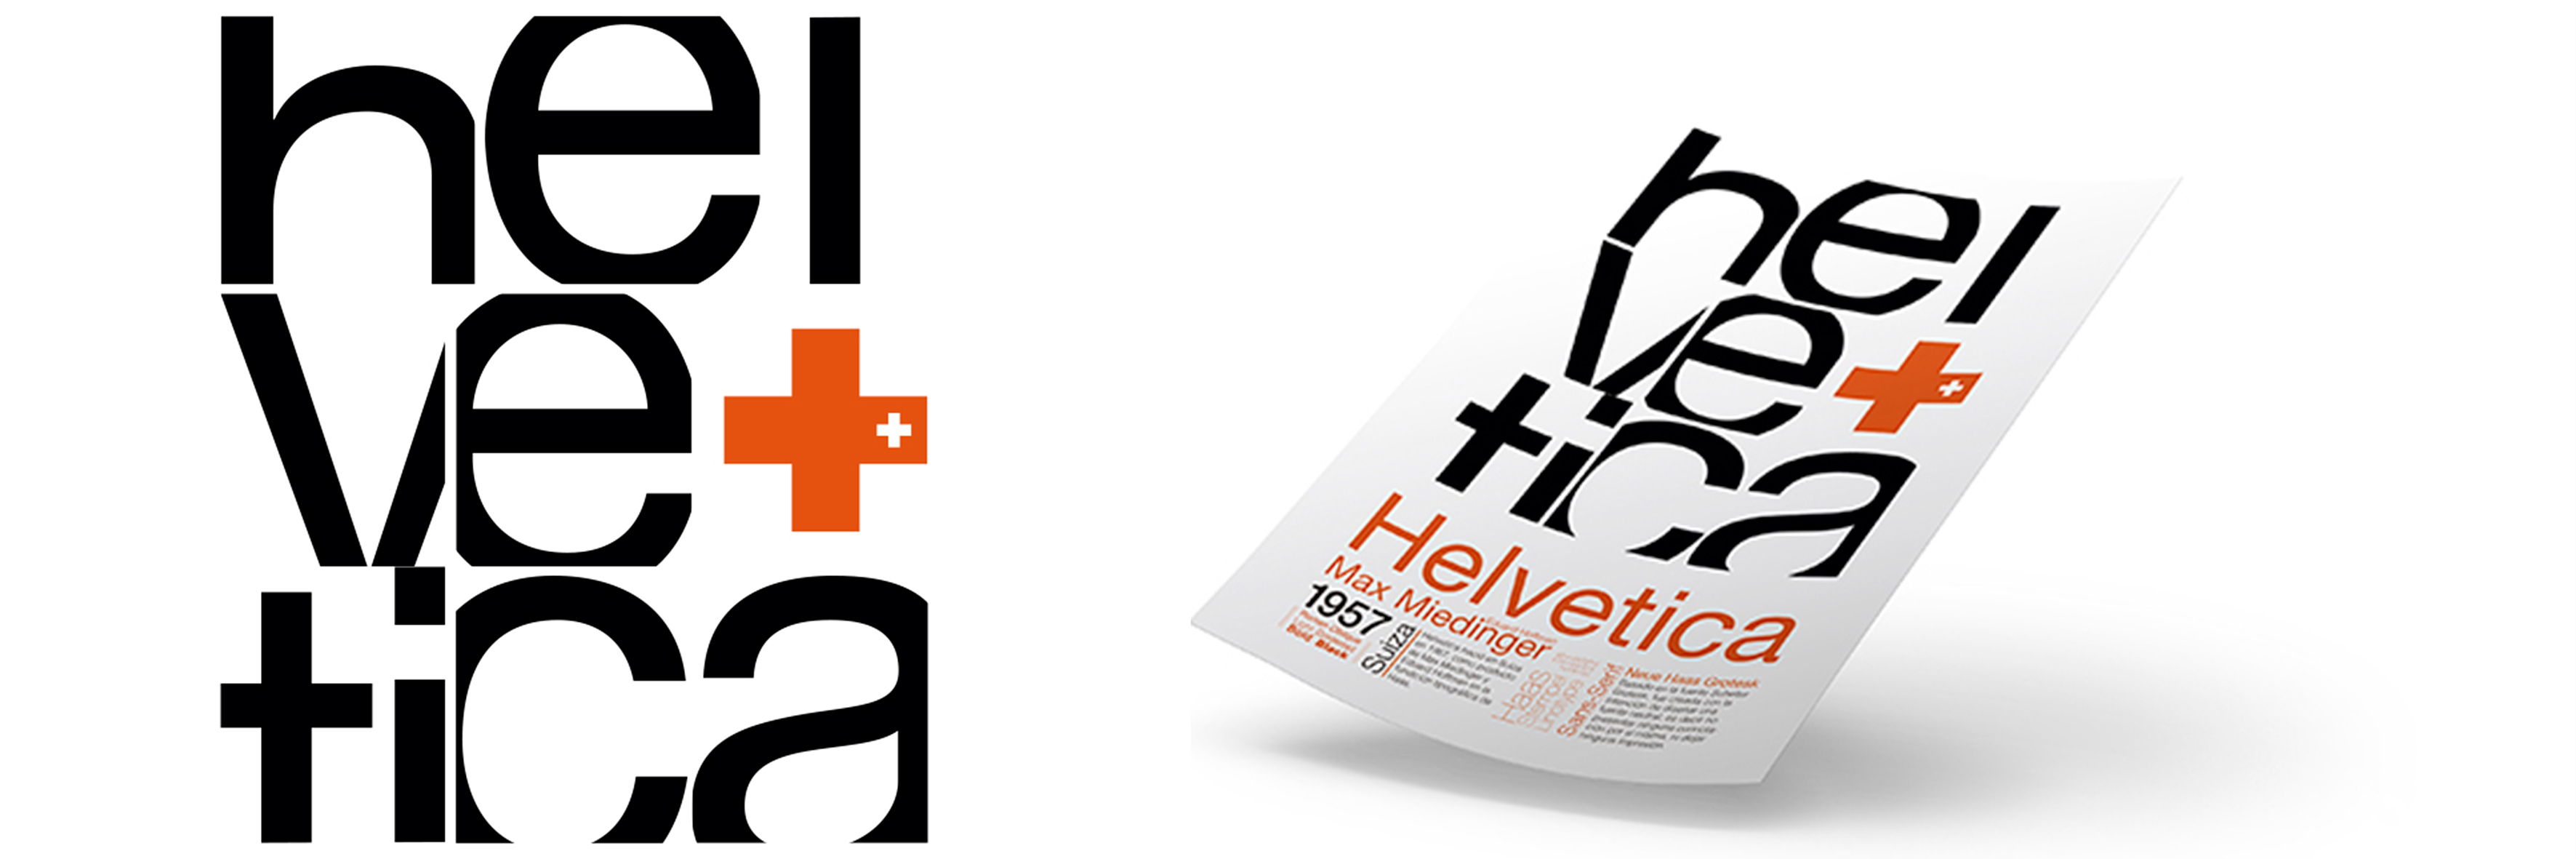 Helvetica poster design